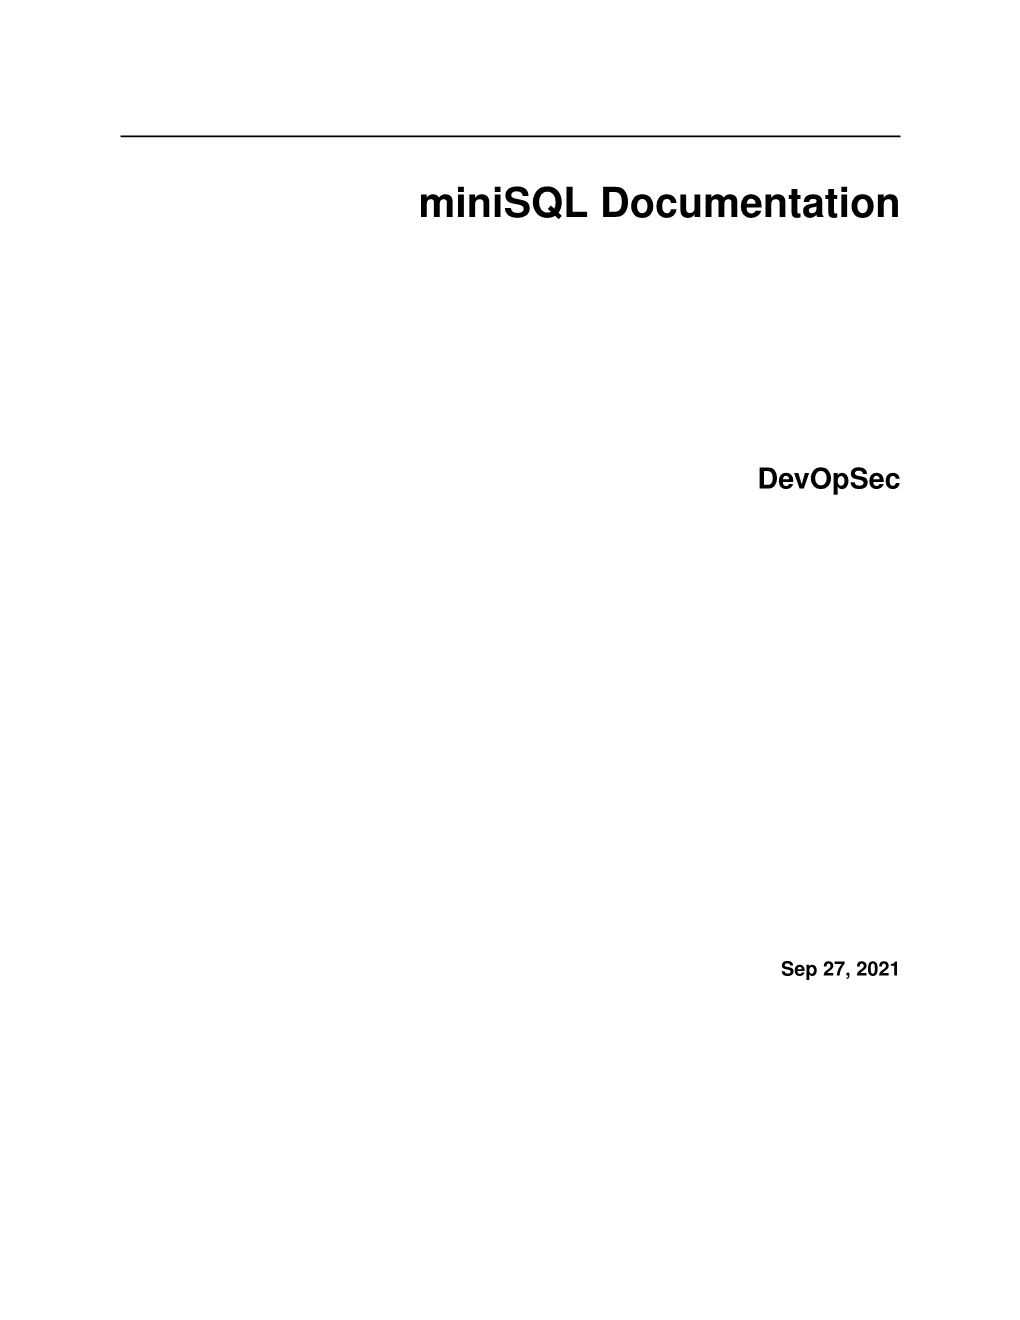 Minisql Documentation